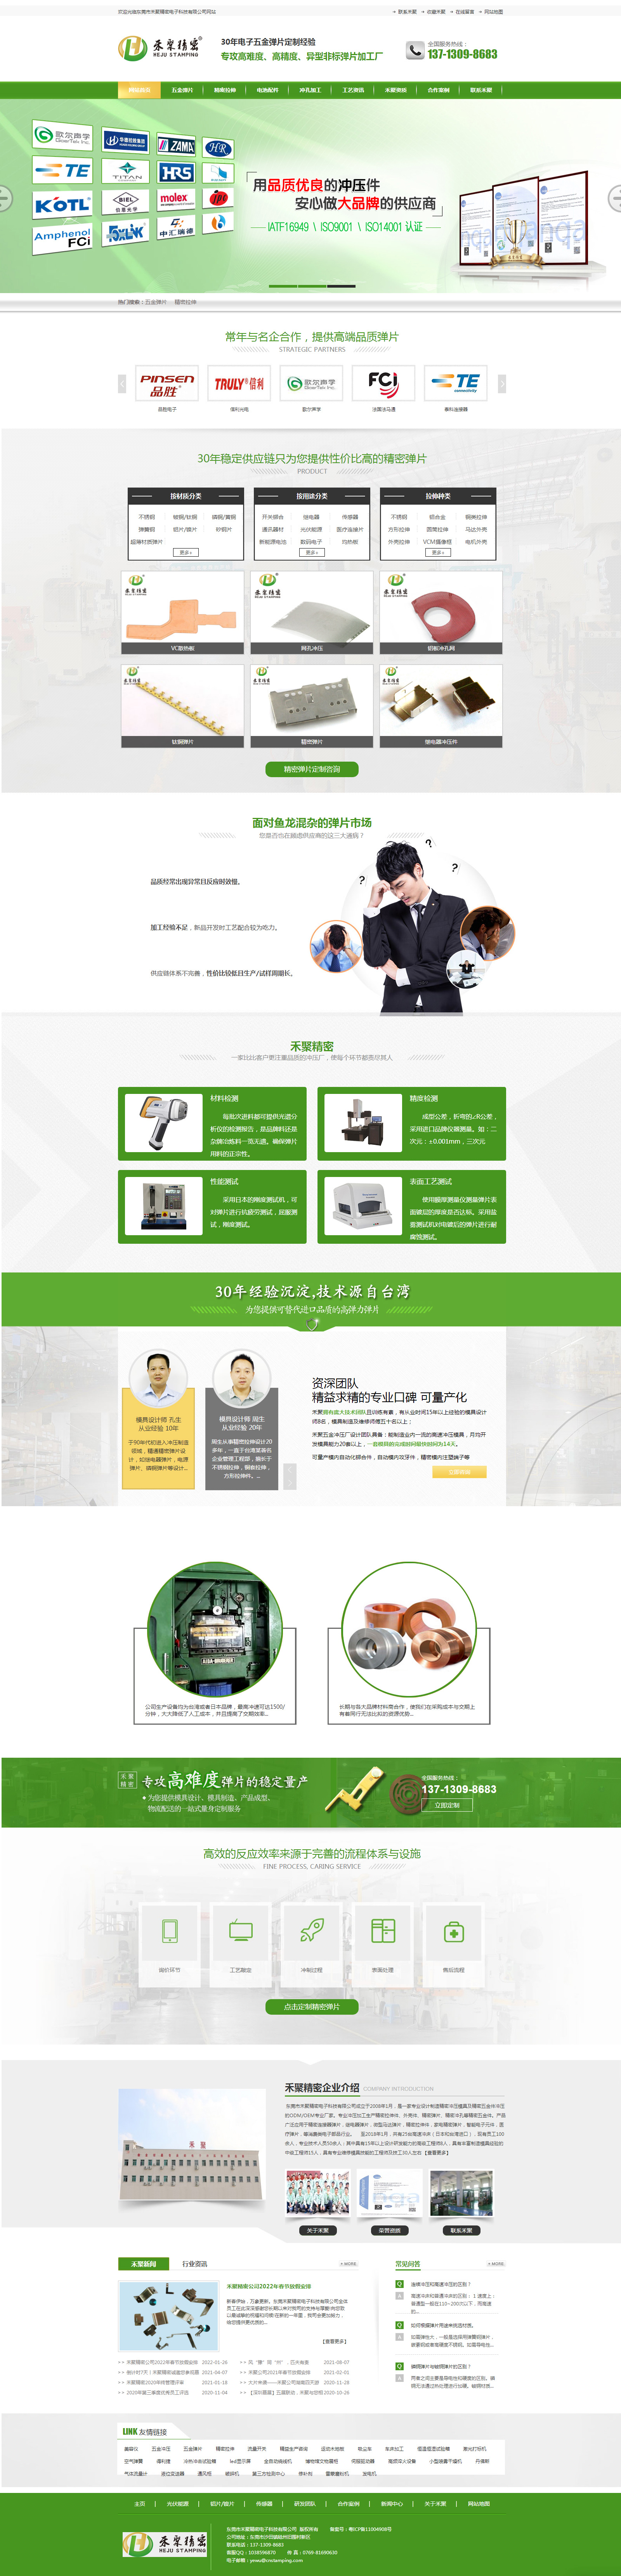 东莞禾聚精密电子科技网站制作首页设计效果图